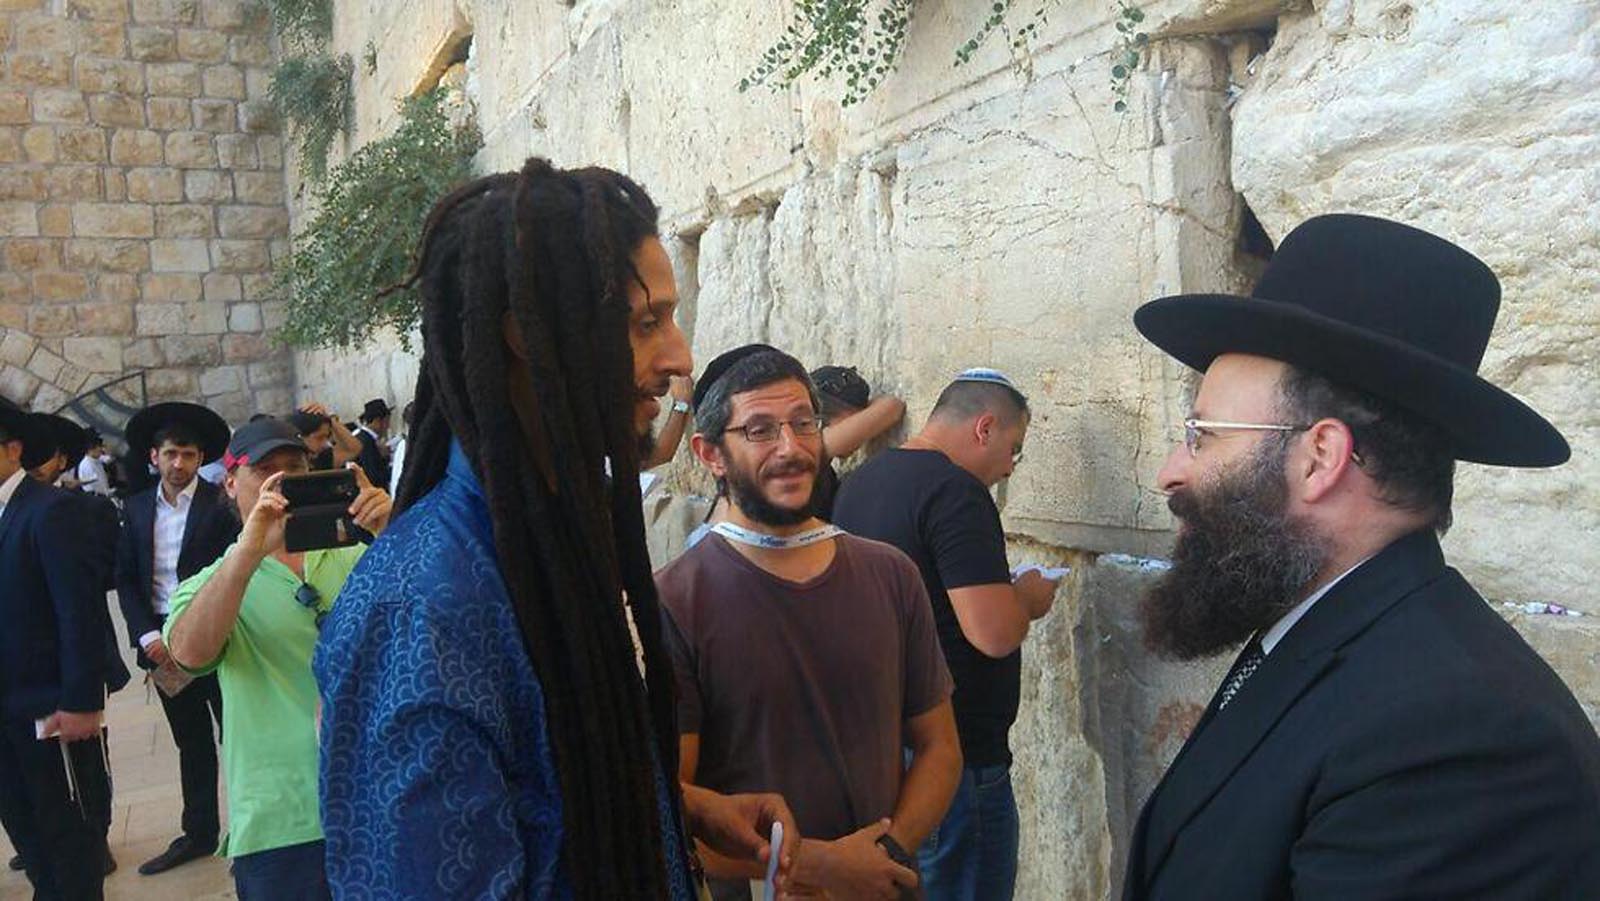 Bob Marley's son Julian is awake in Israel | ISRAEL21c1600 x 901